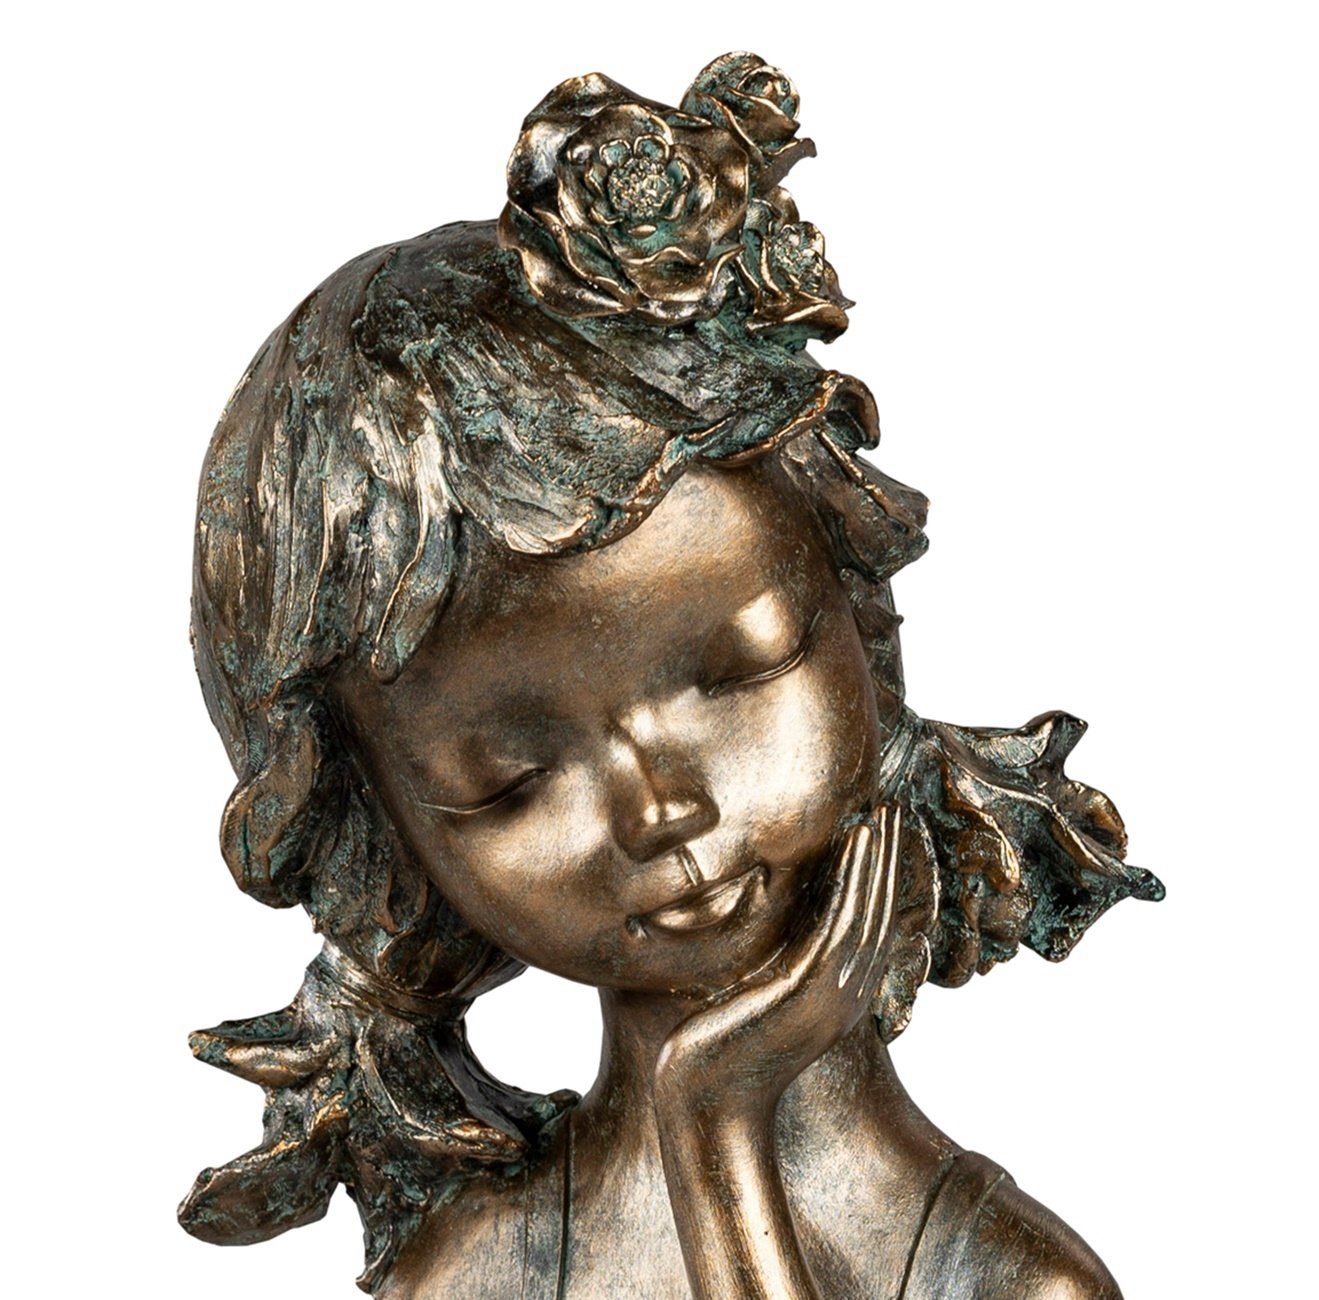 dekojohnson Dekofigur exklusive Deko-Büste-Mädchen bronzefarben 30cm